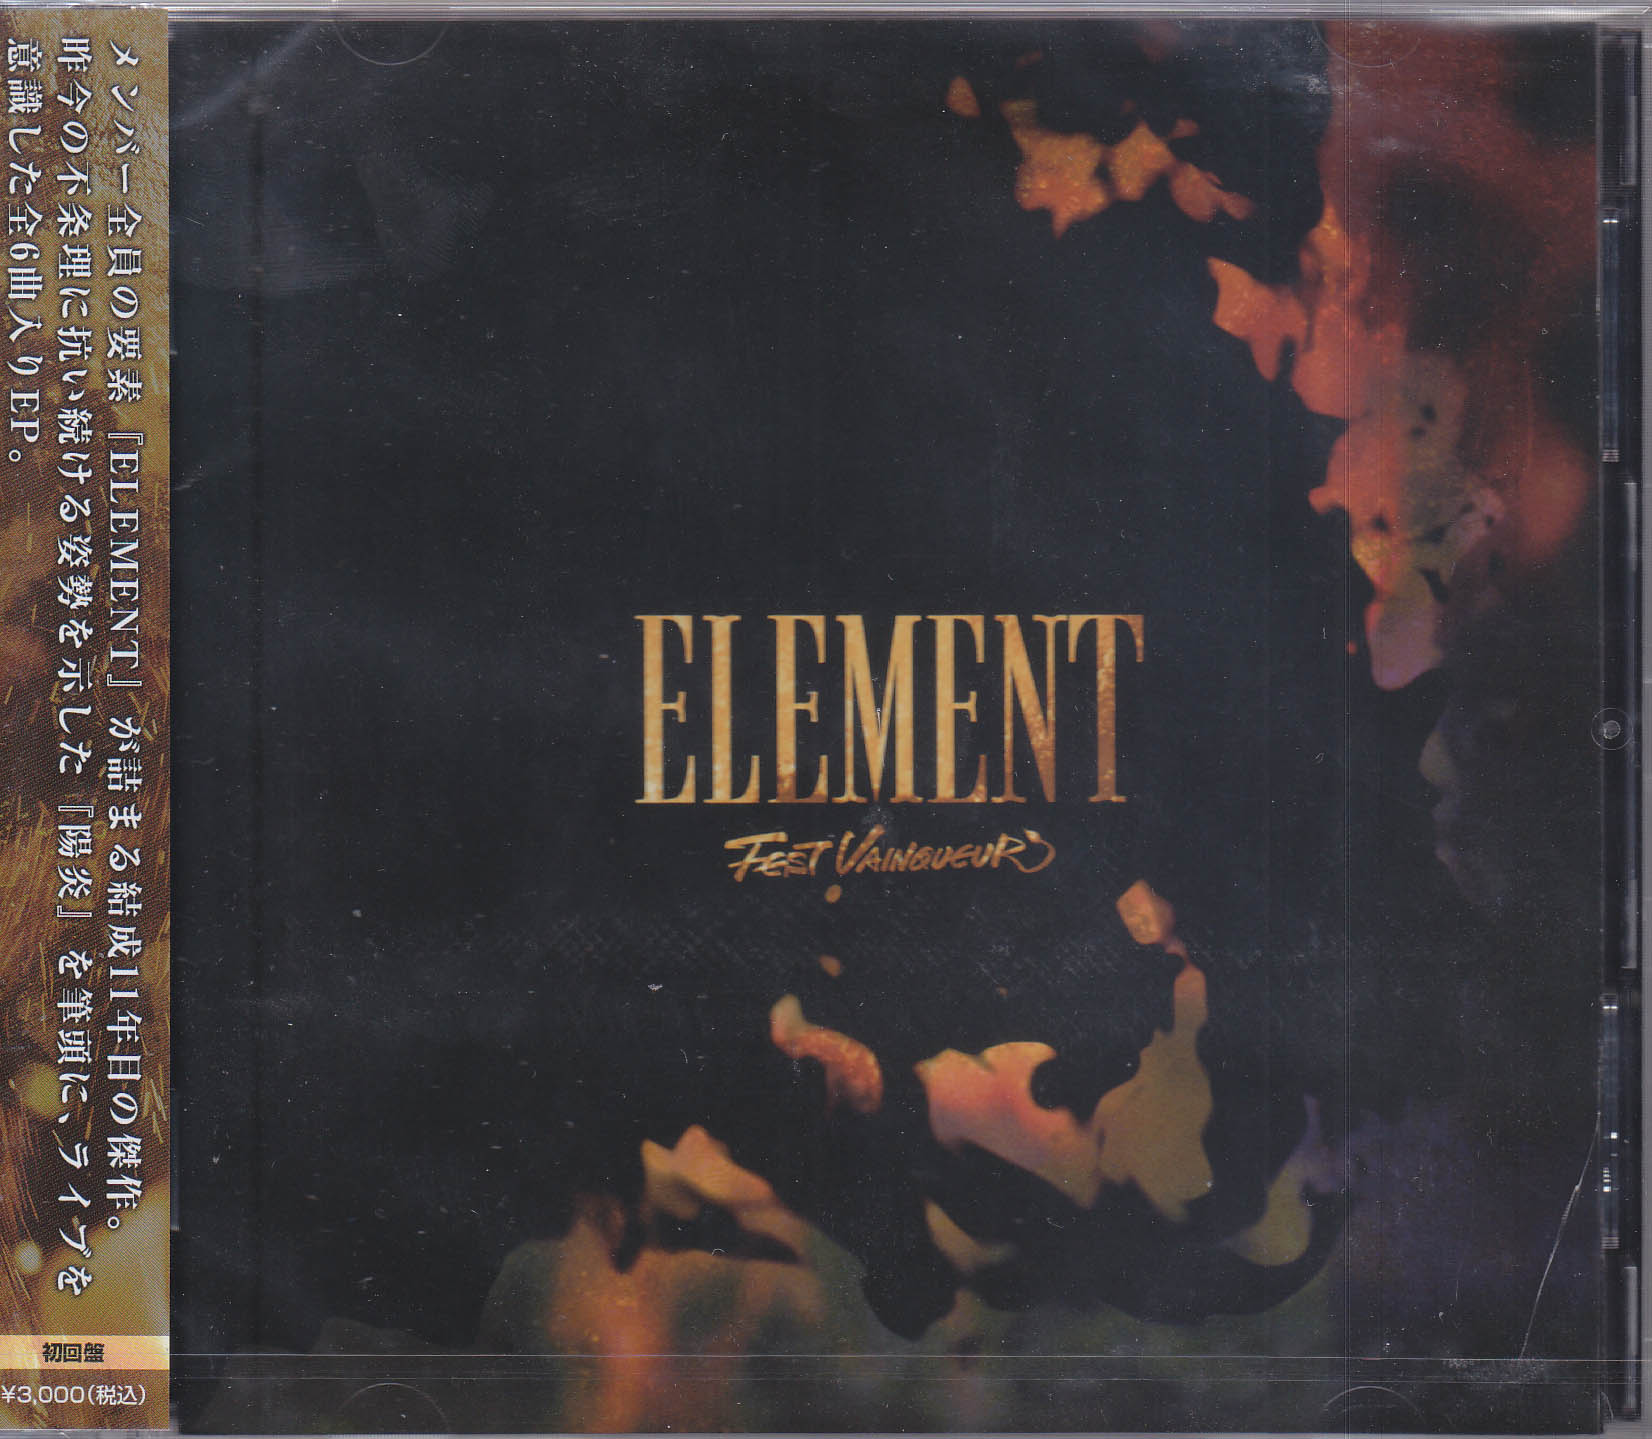 FEST VAINQUEUR ( フェストヴァンクール )  の CD 【初回盤】ELEMENT